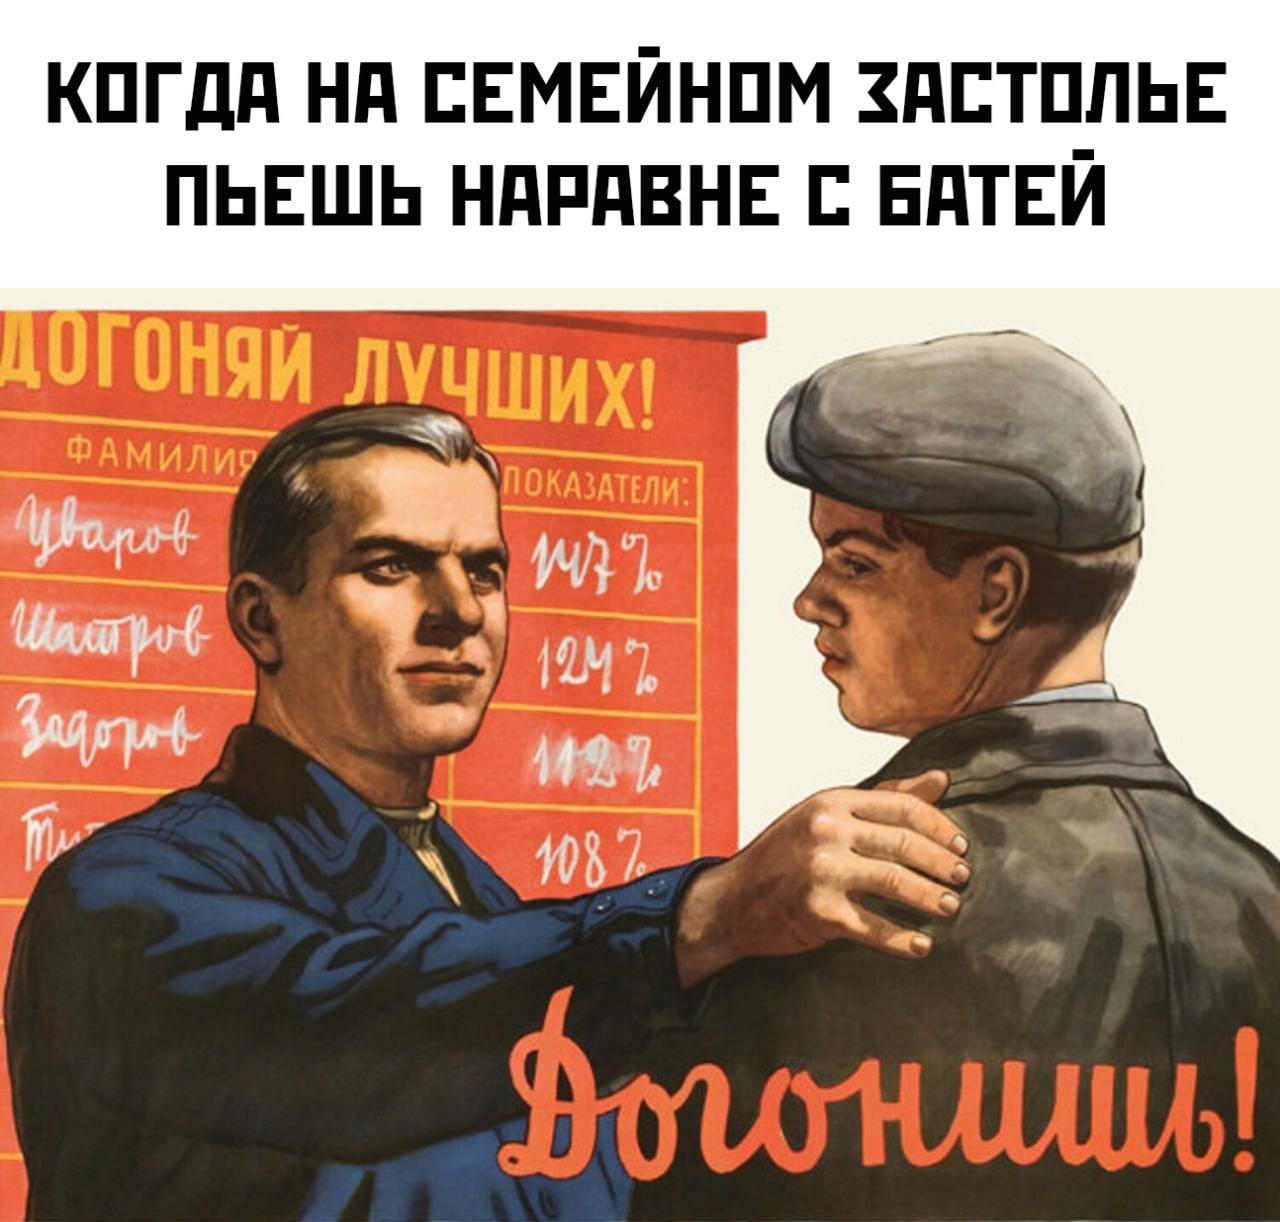 Не догнал юг. Советские плакаты товарищ. Прикольные переделанные советские плакаты. Советские плакаты про работу. Советские плакаты приколы юмор.